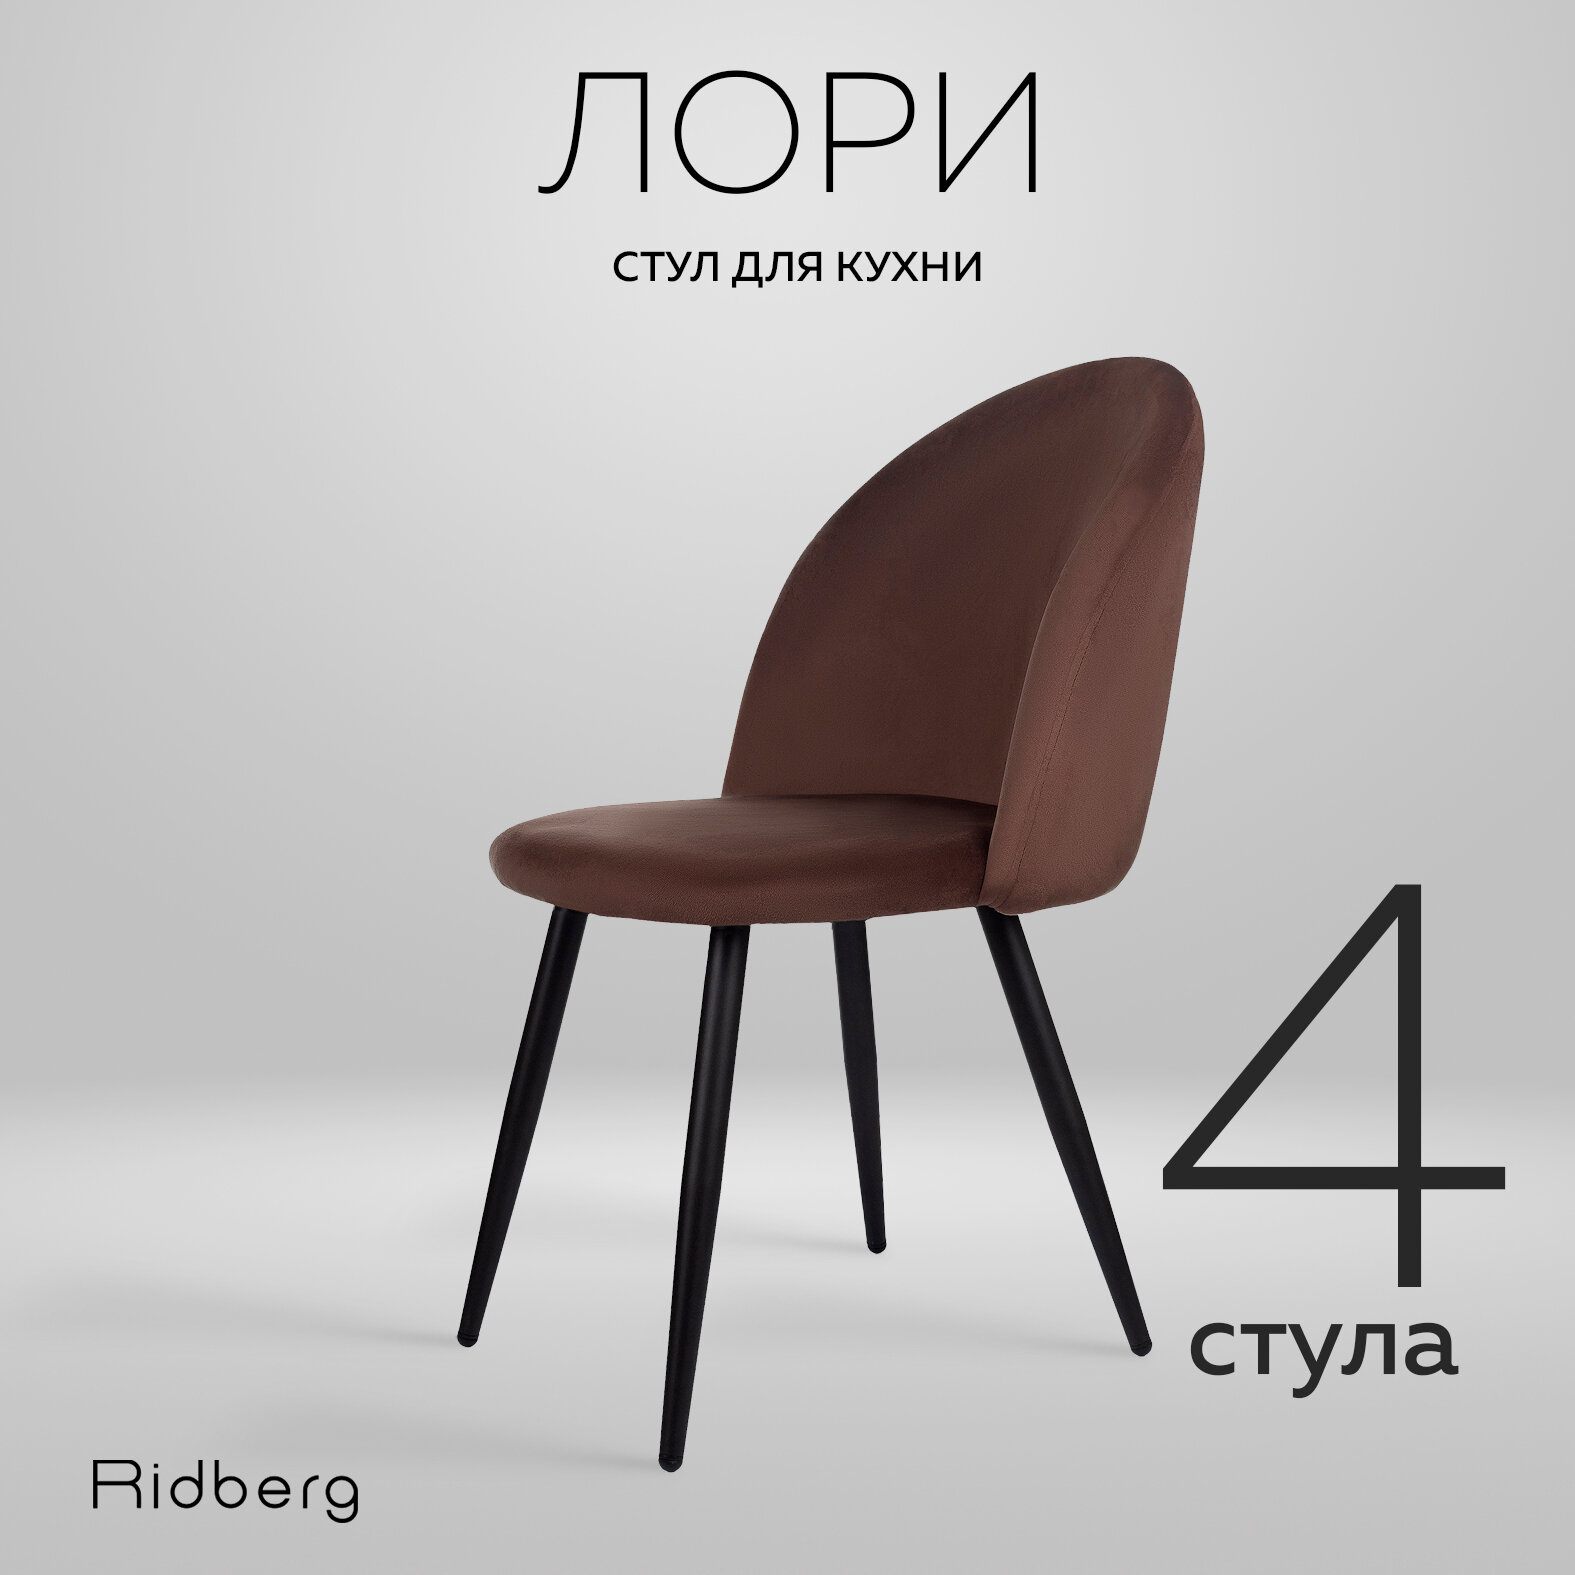 Комплект стульев для кухни и гостиной Ridberg Лори Velour, 4шт, коричневый, для дома, обеденный стул мягкий с боковой поддержкой спины